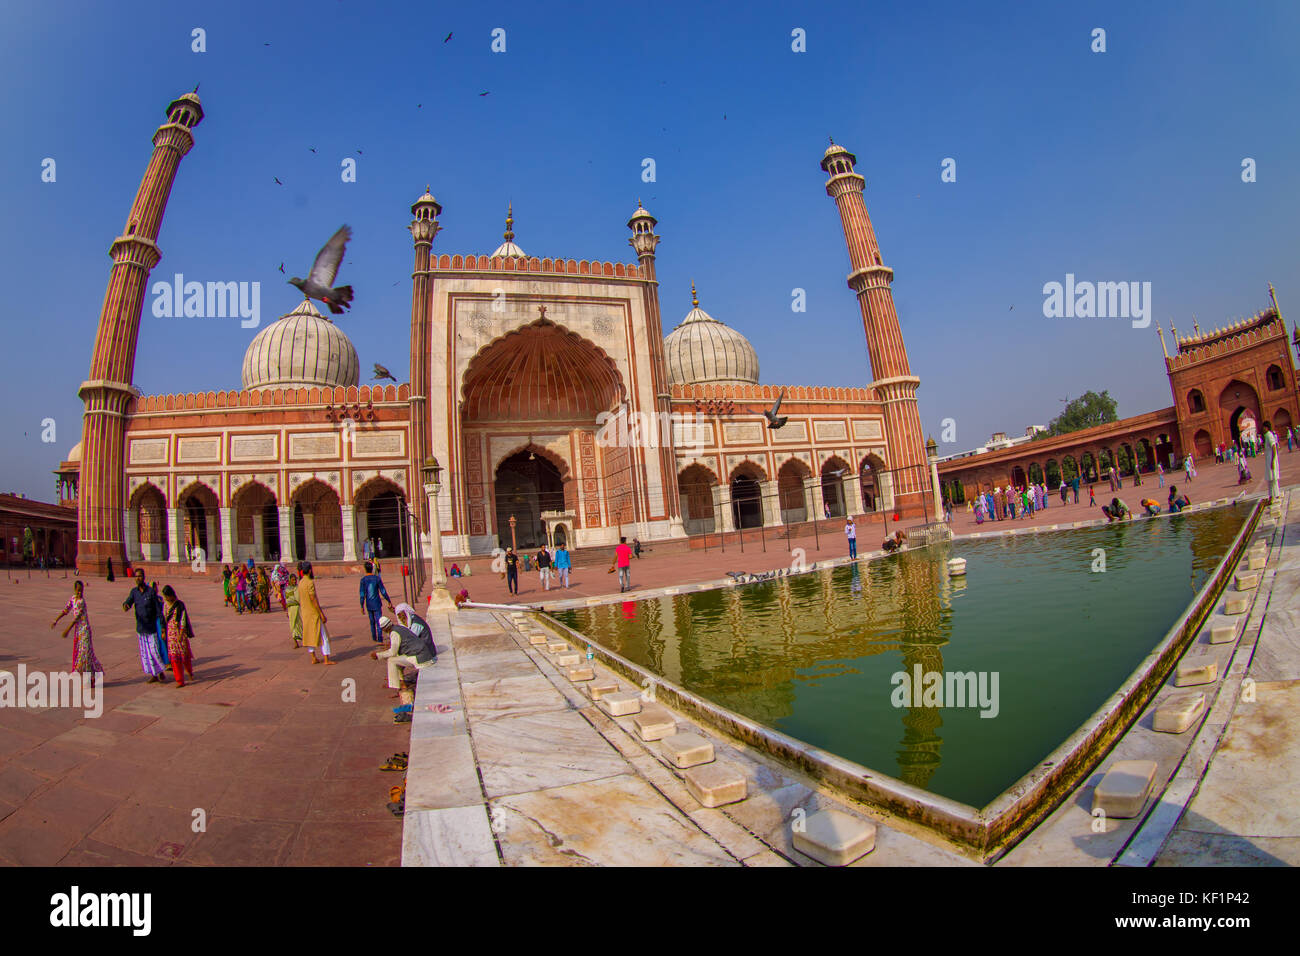 Delhi, Indien - 27. September 2017: unbekannte Menschen zu Fuß in der Nähe des künstlichen Teich vor einem wunderschönen Jama Masjid Tempel, mit einem Vögel fliegen über dem Tempel, das ist die größte muslimische Moschee in Delhi, Indien, Fischaugen-Effekt Stockfoto